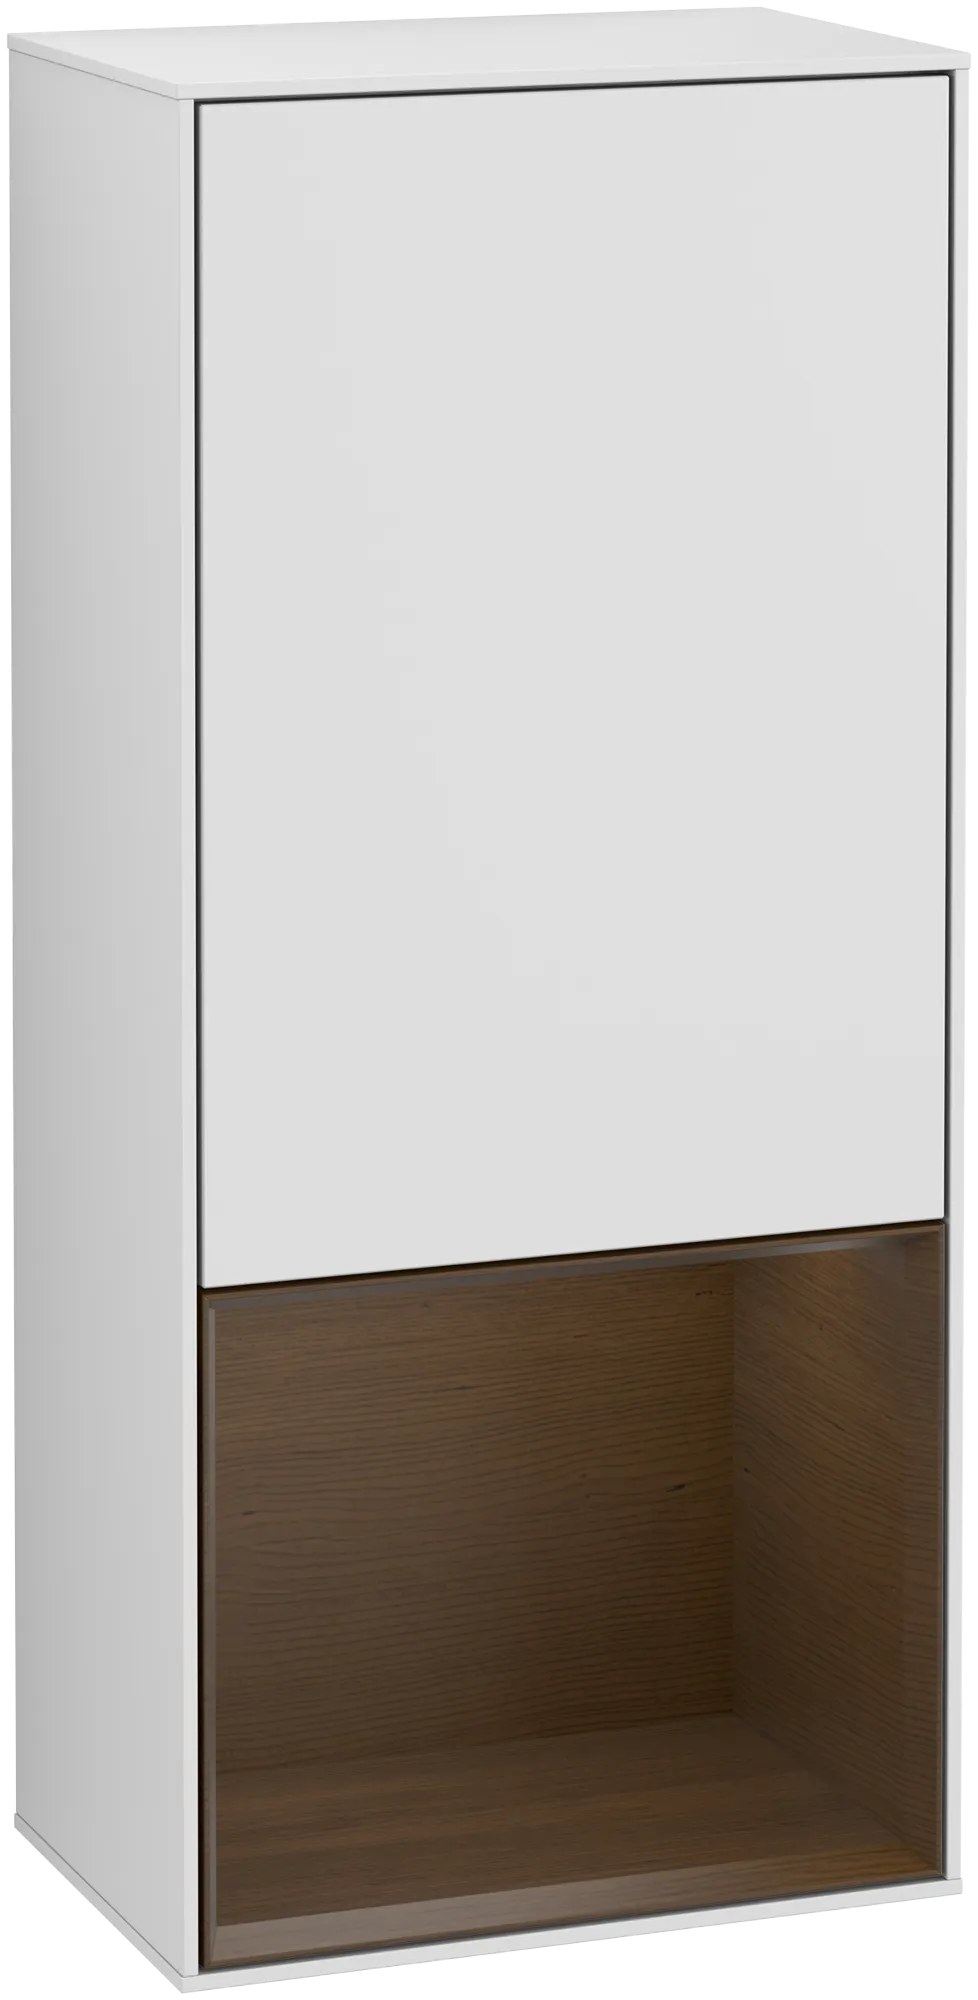 Bild von VILLEROY BOCH Finion Seitenschrank, mit Beleuchtung, 1 Tür, 418 x 936 x 270 mm, White Matt Lacquer / Walnut Veneer #G550GNMT